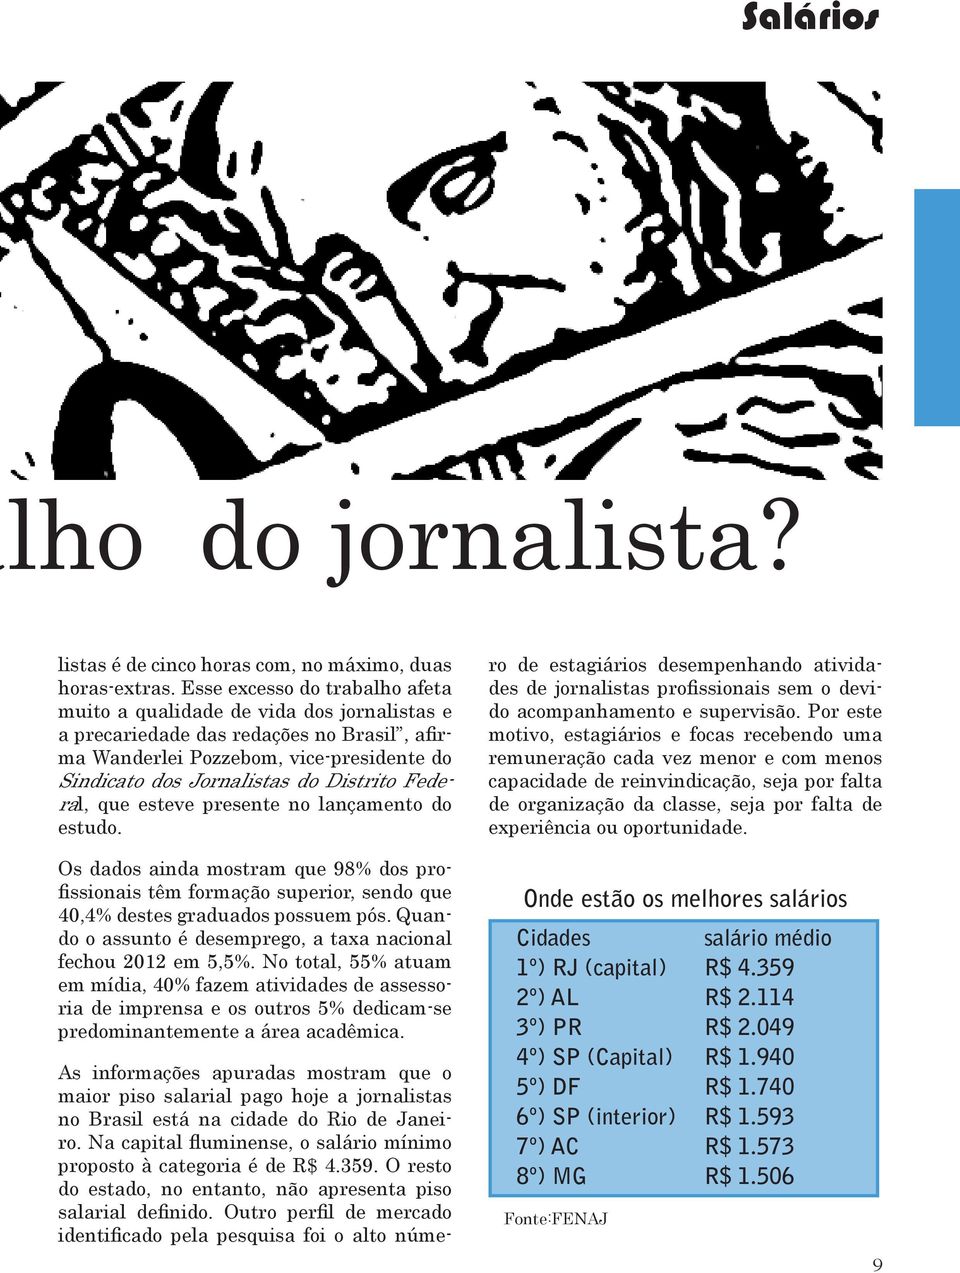 Federal, que esteve presente no lançamento do estudo. As informações apuradas mostram que o maior piso salarial pago hoje a jornalistas no Brasil está na cidade do Rio de Janeiro.